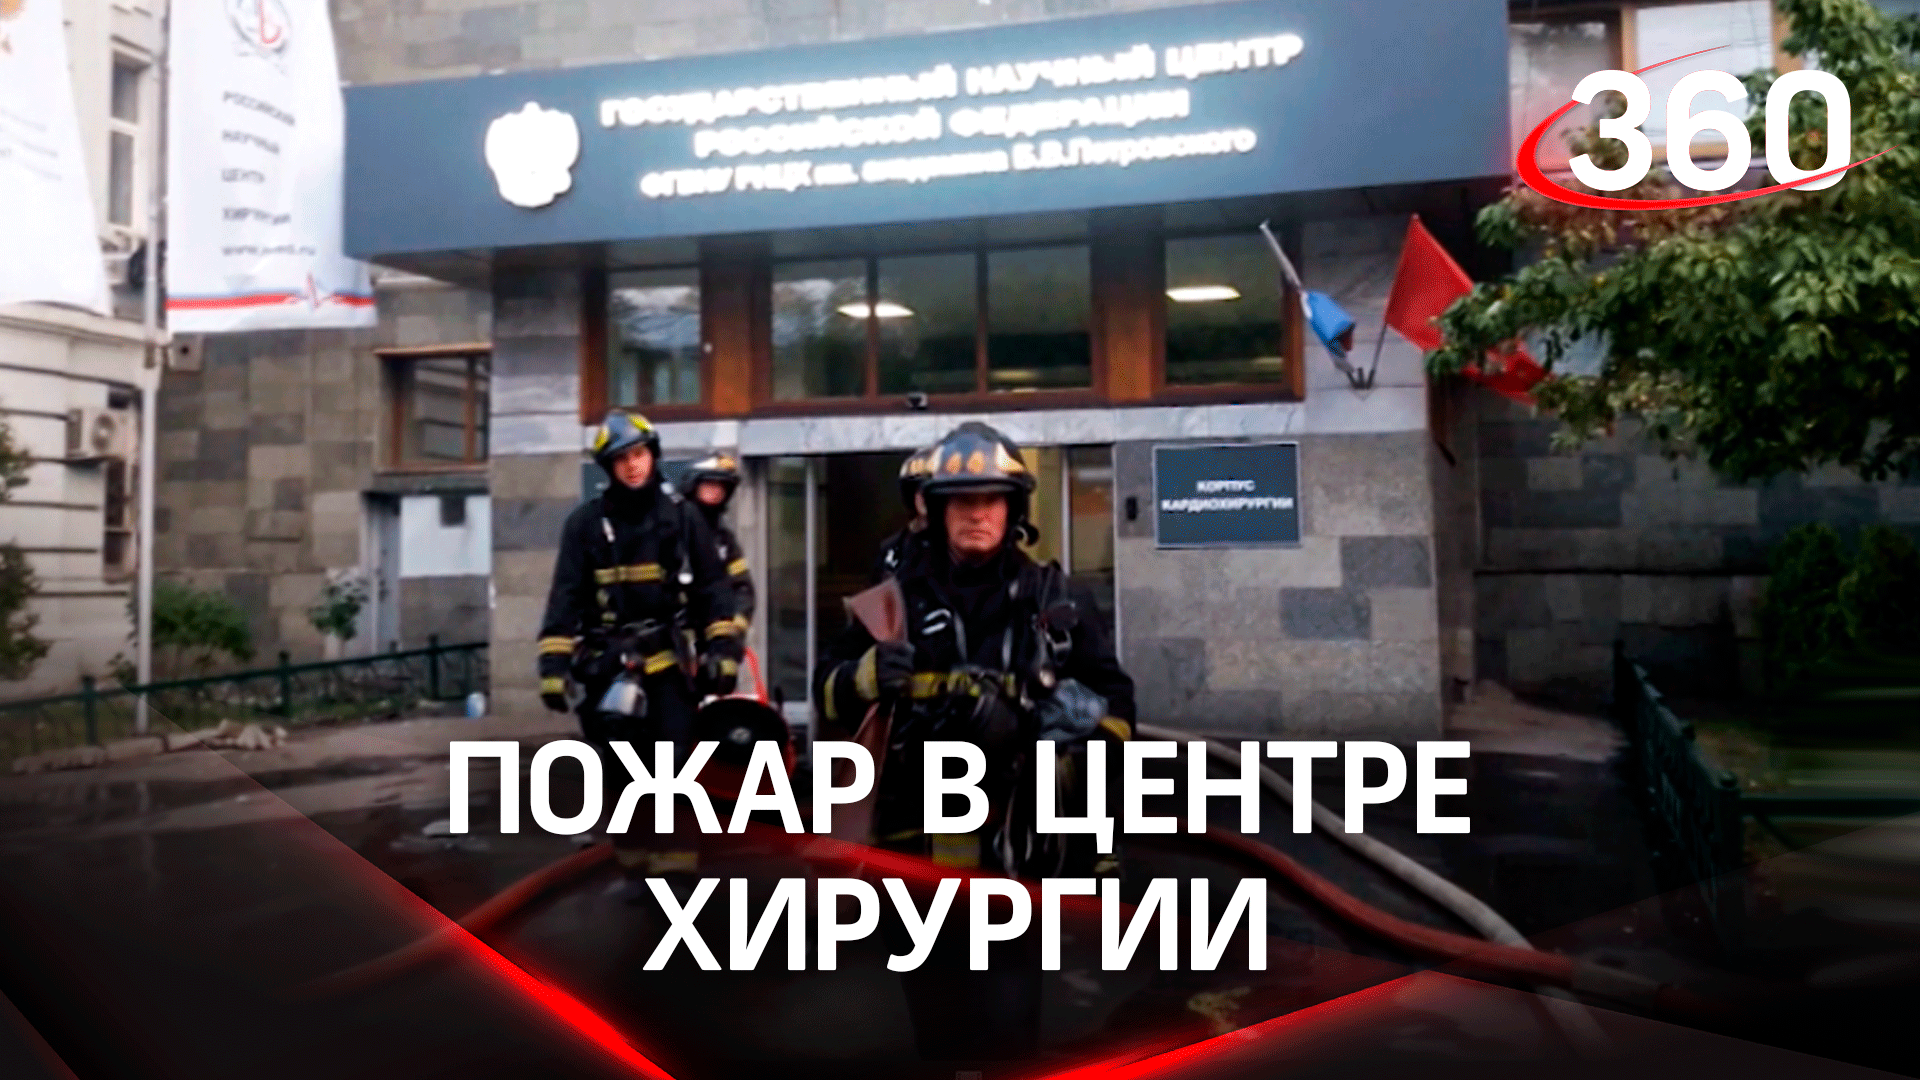 Пожар в московском центре хирургии: персонал и спасатели эвакуировали пациентов